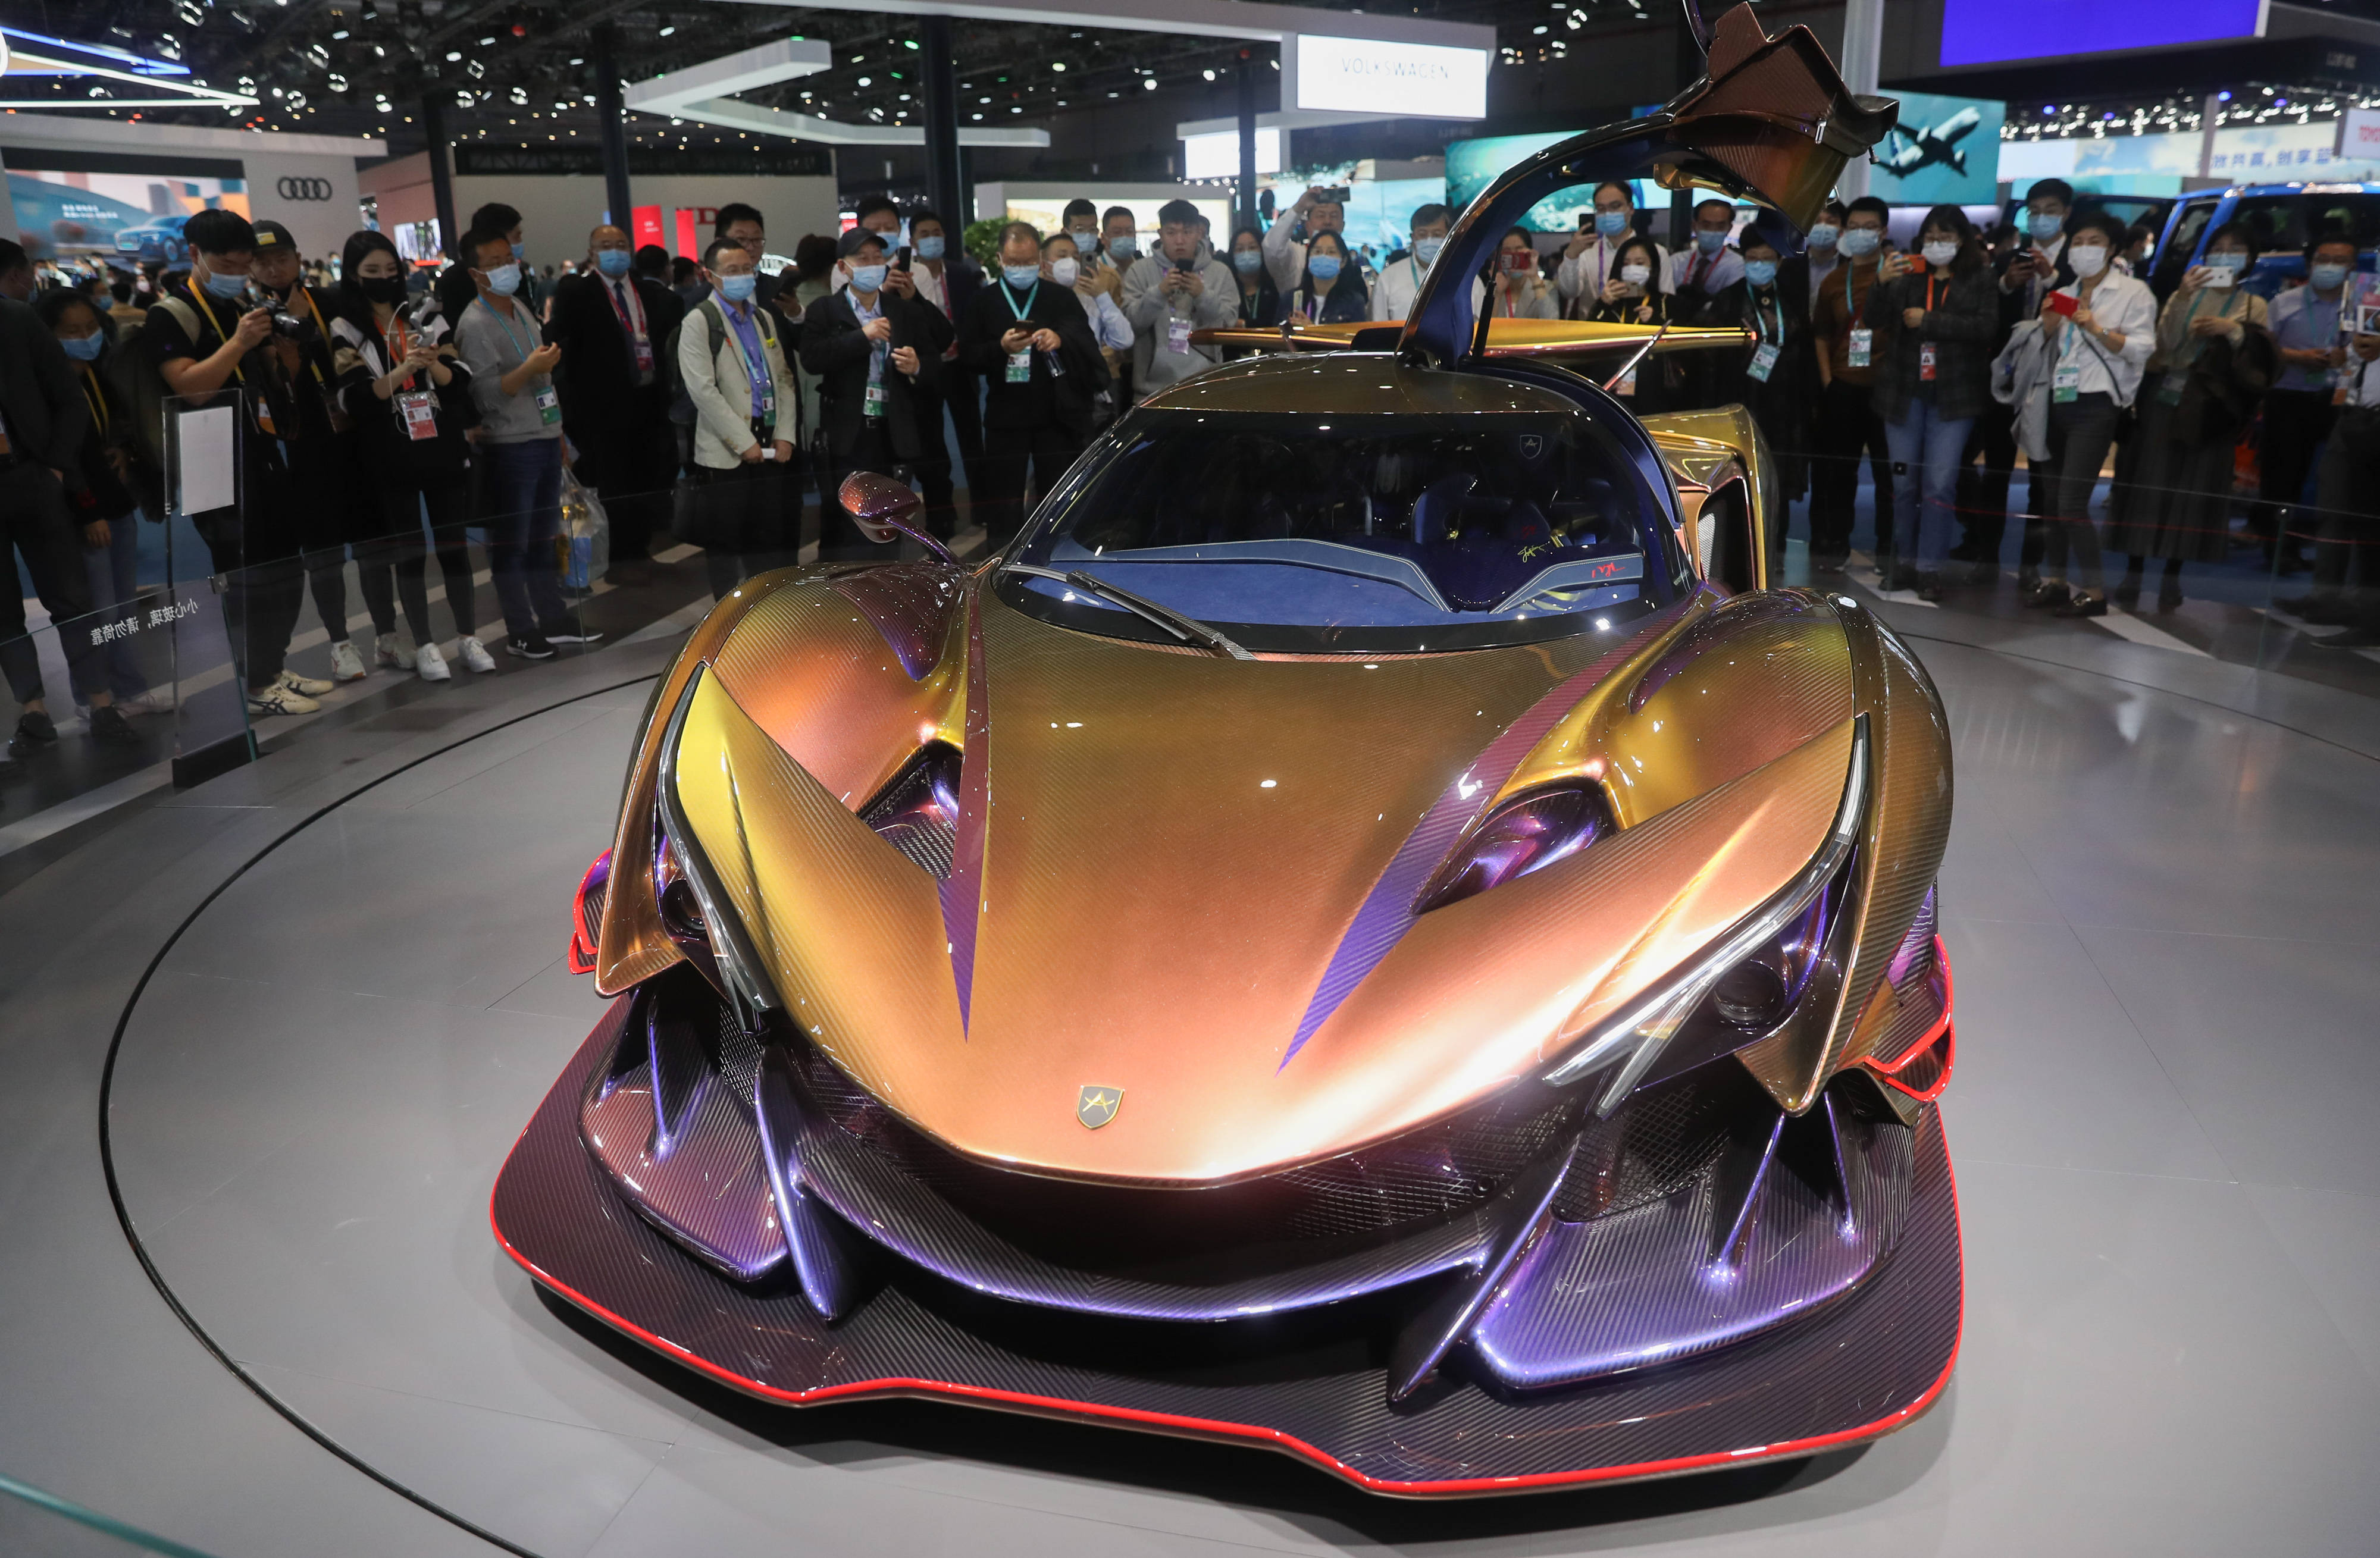 全球首款全碳纤维超级跑车亮相第三届进博会